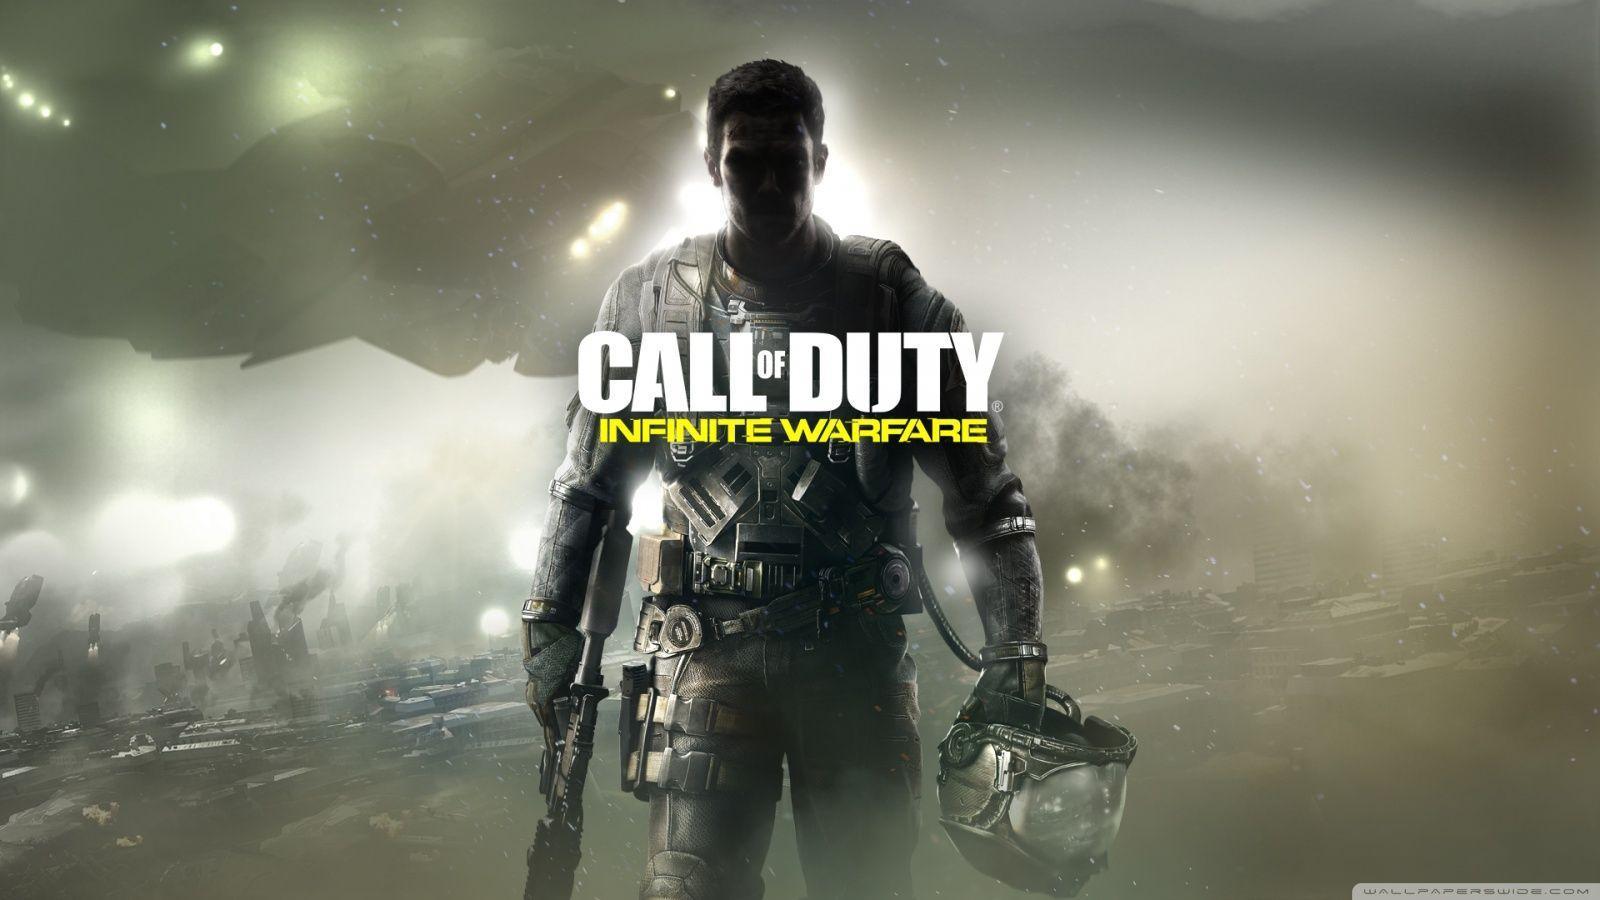 Wallpaper Campaign Call Of Duty Infinite Warfare